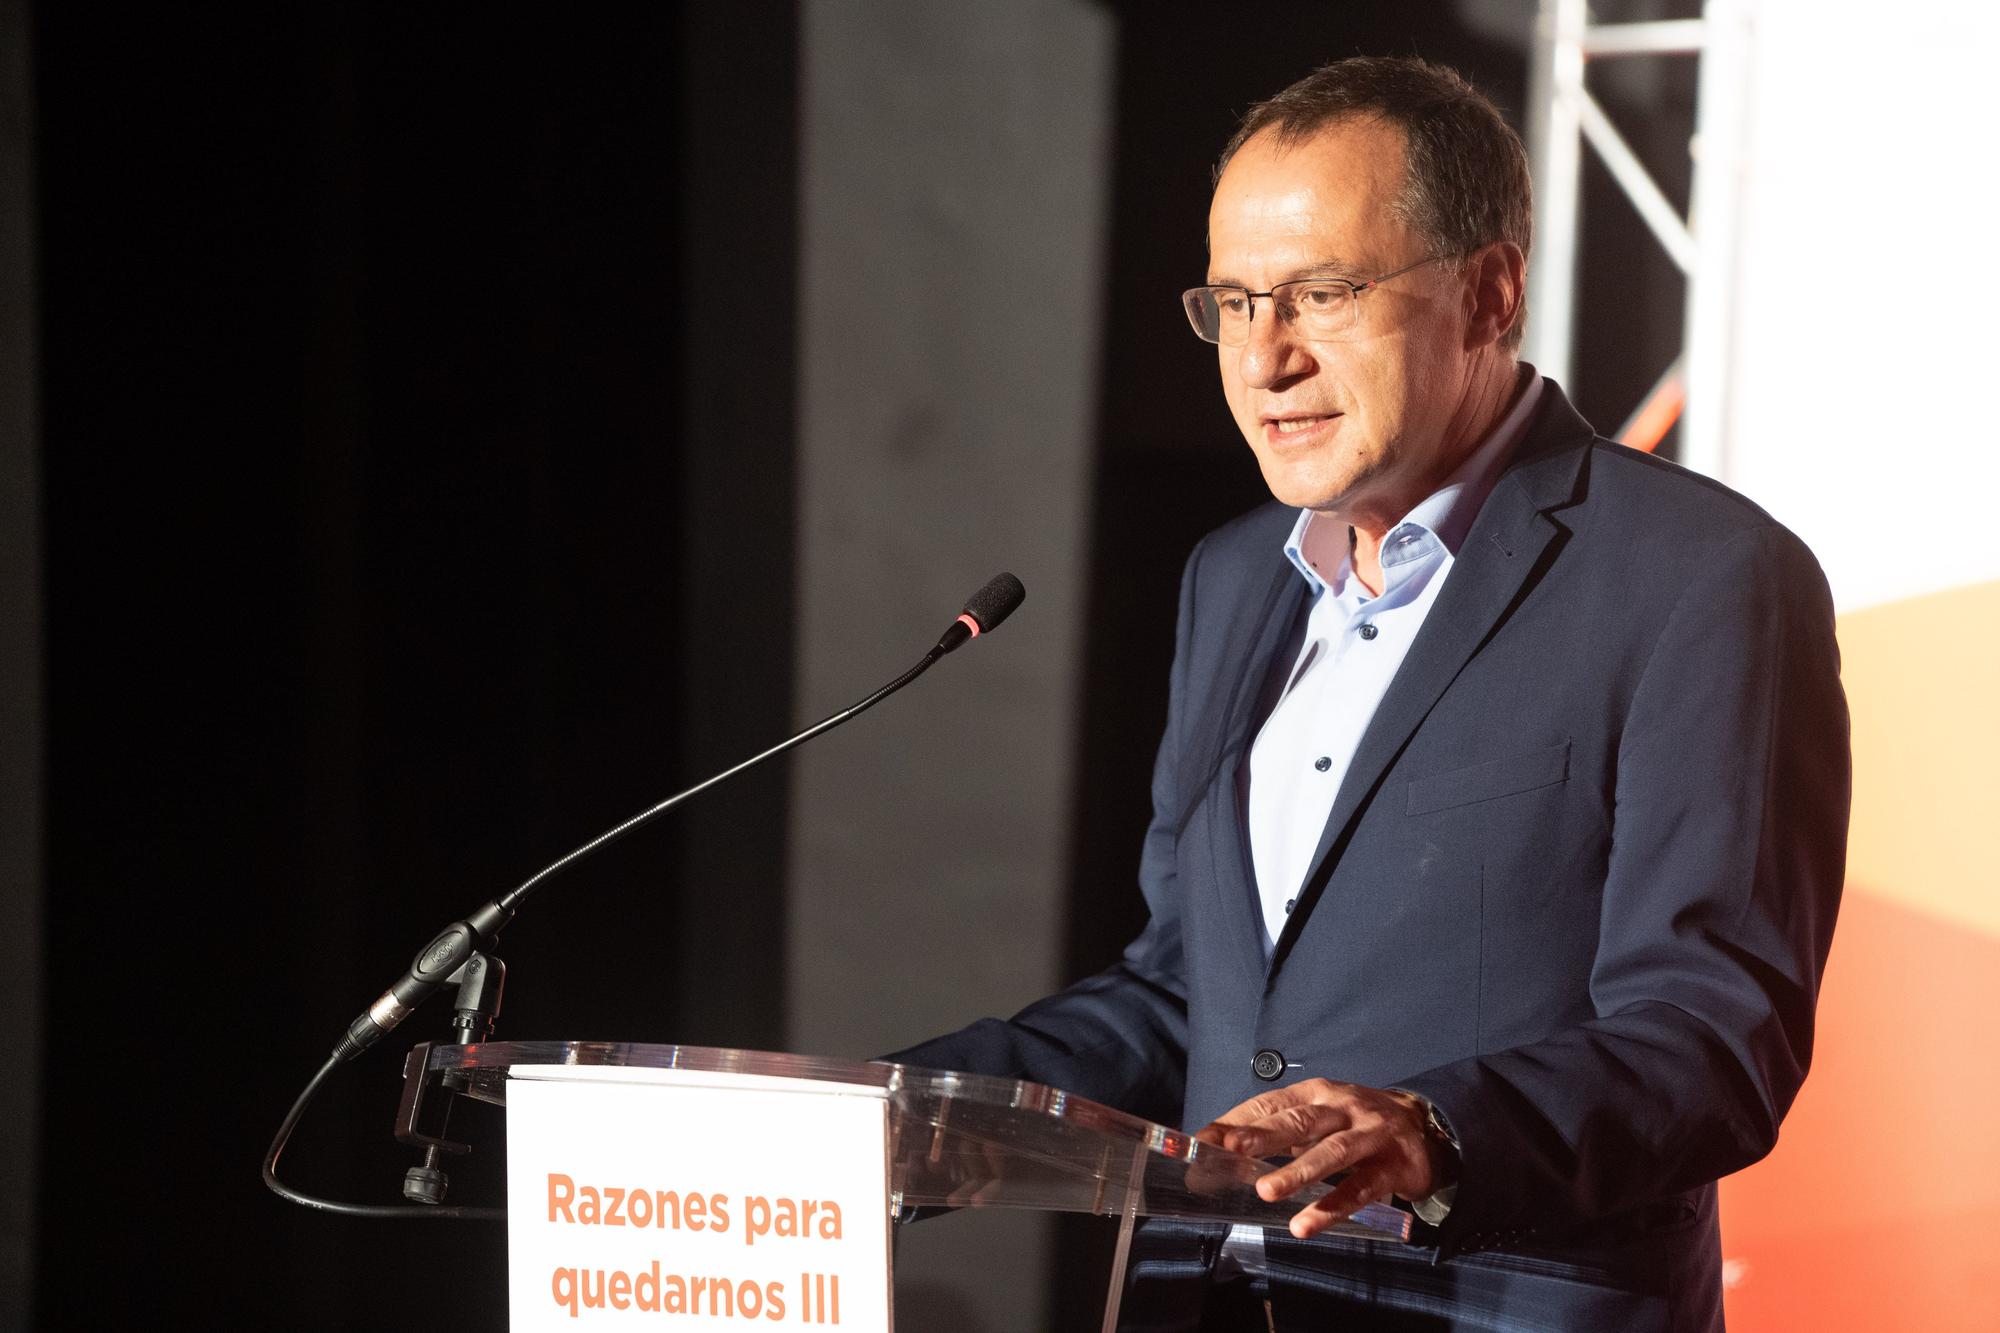 GALERÍA | Las mejores imágenes del III congreso en Zamora "Razones para quedarnos"